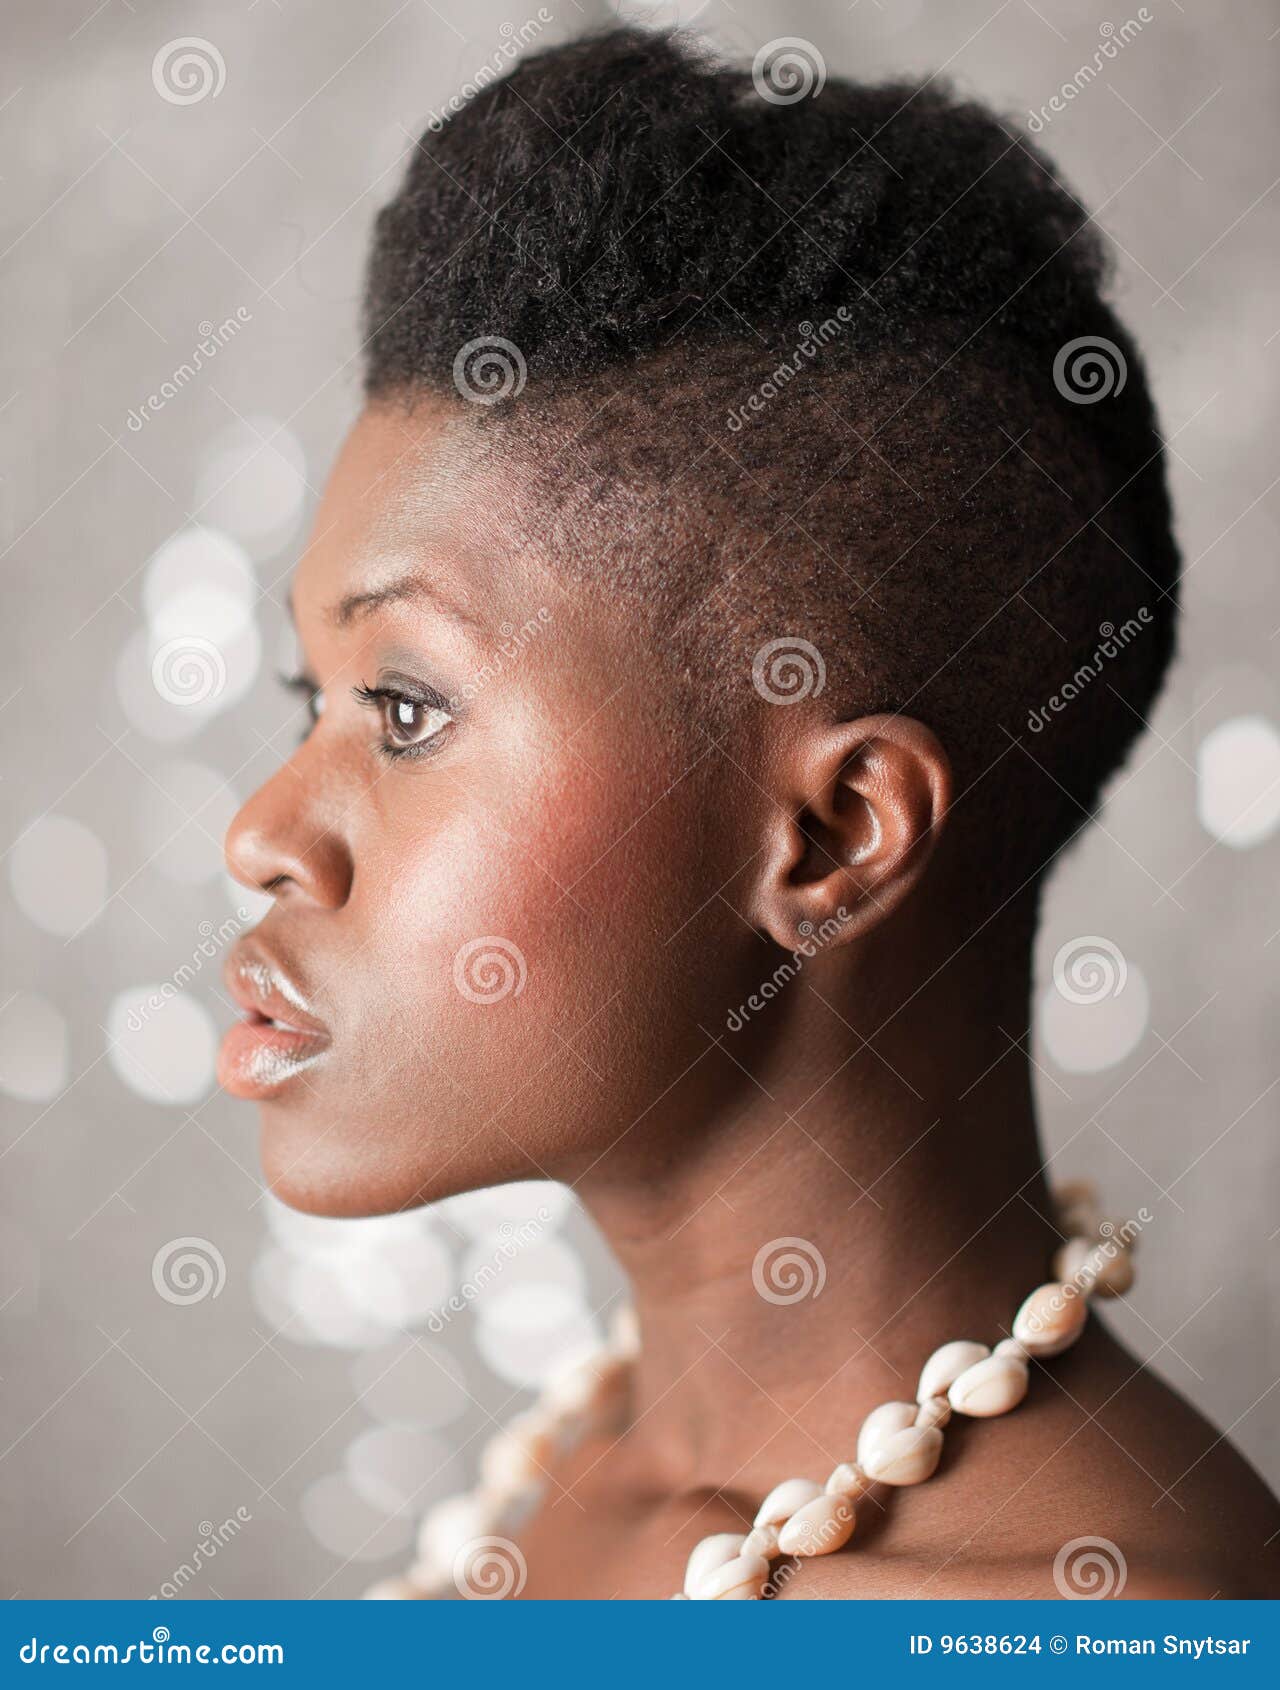 Lovely black girl images